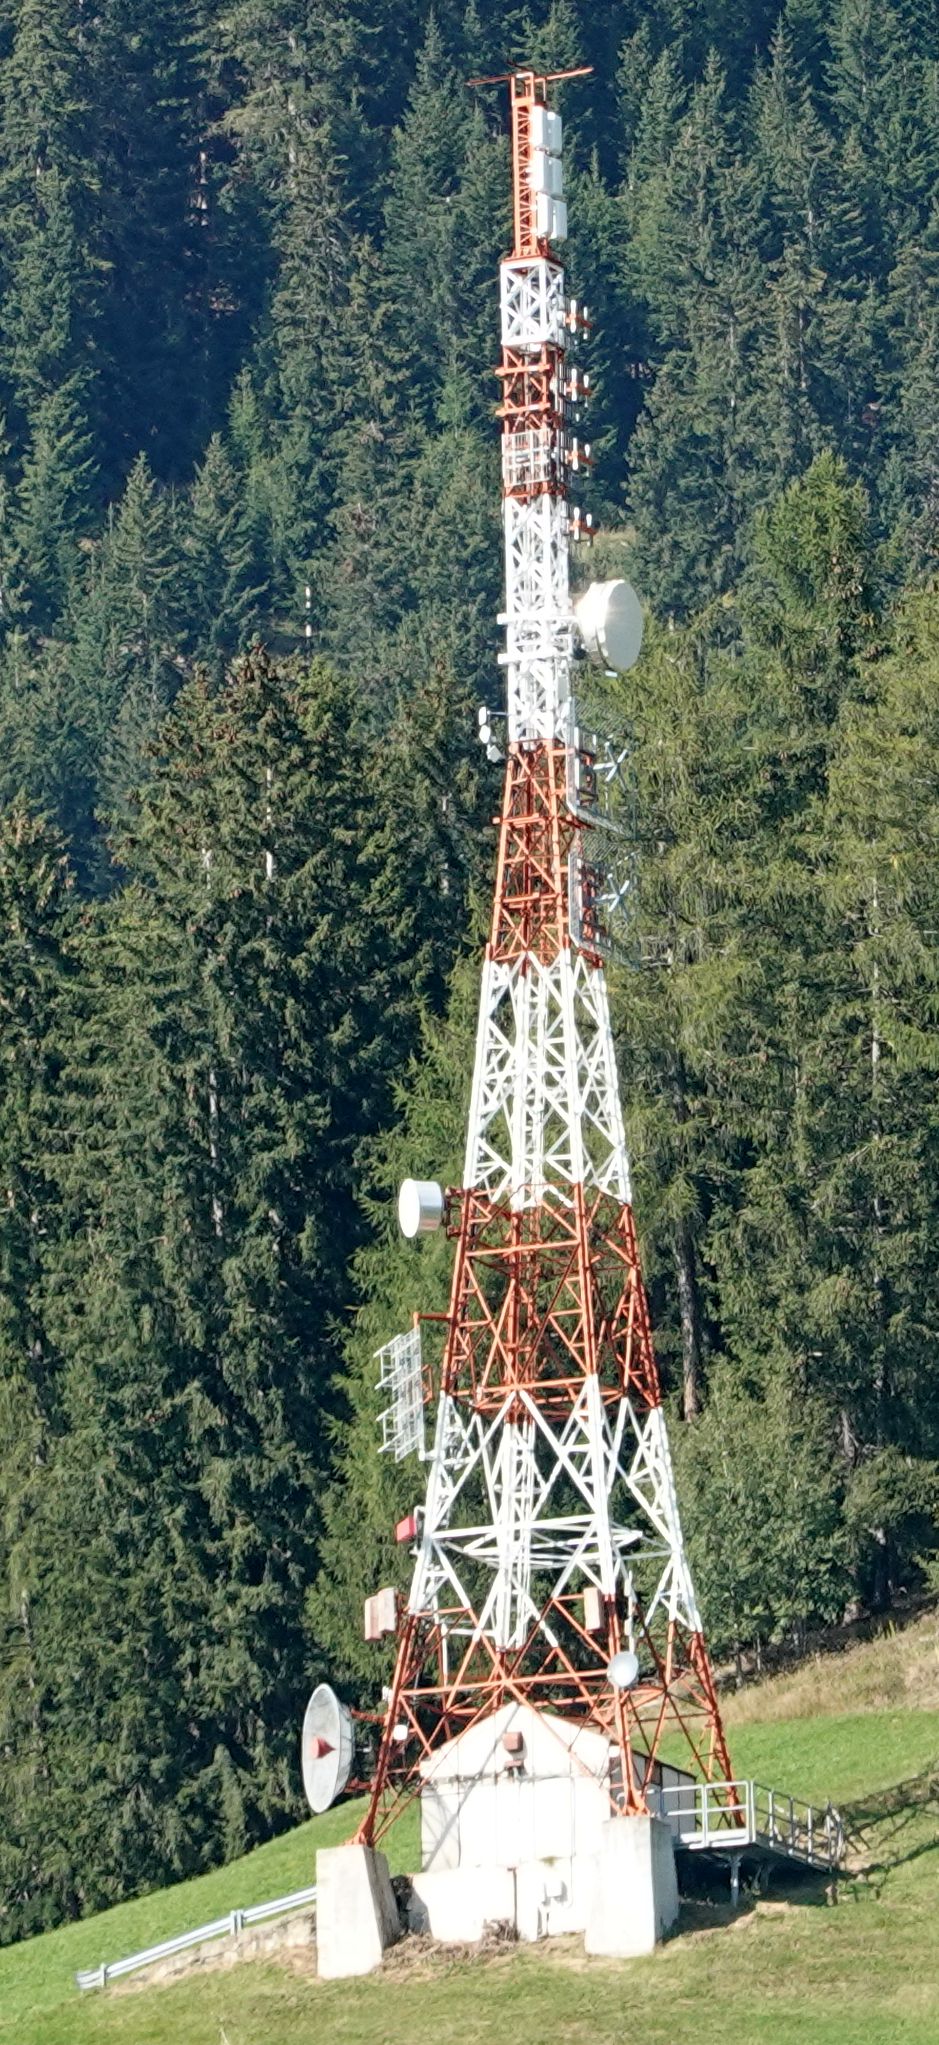 Die RAI-Anlage im September 2021 ohne Antennen von Vodafone